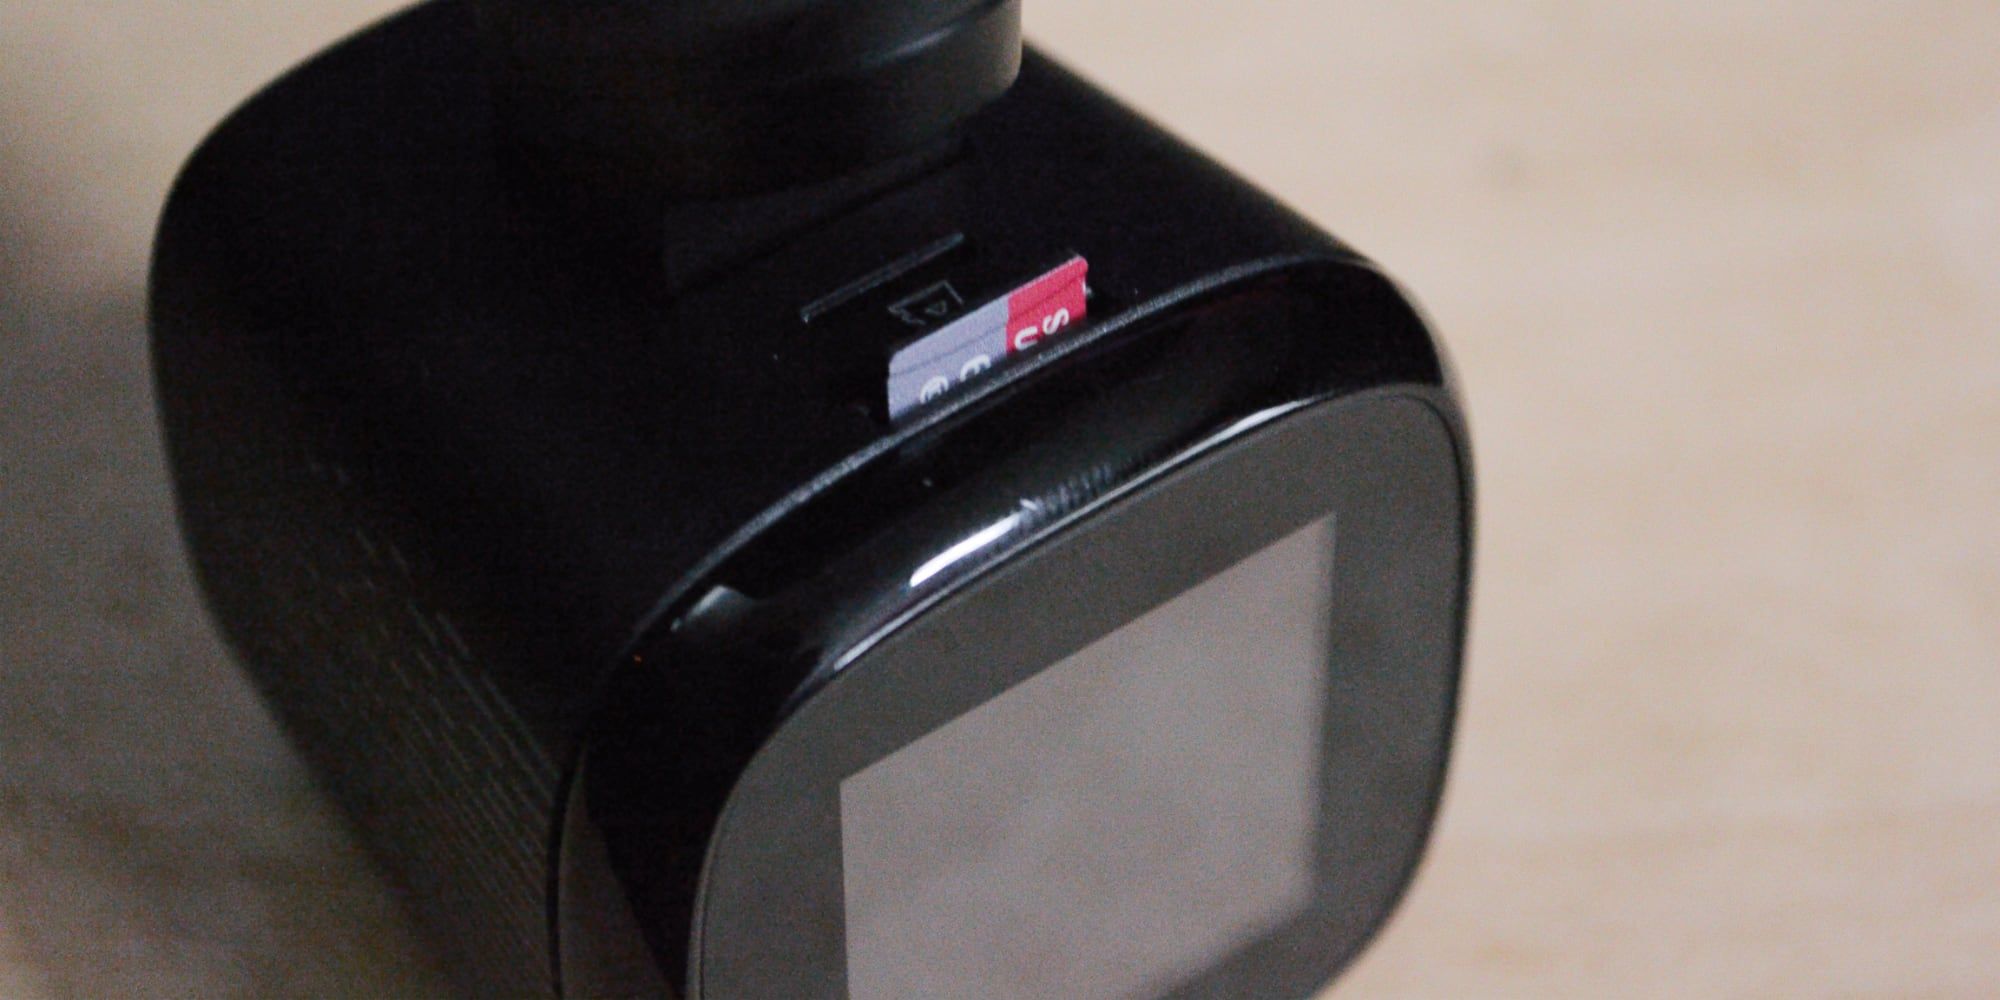 jomise k7 1600p dashcam review card slot - La Jomise K7 1600P è una Dashcam che aiuta davvero la tua guida